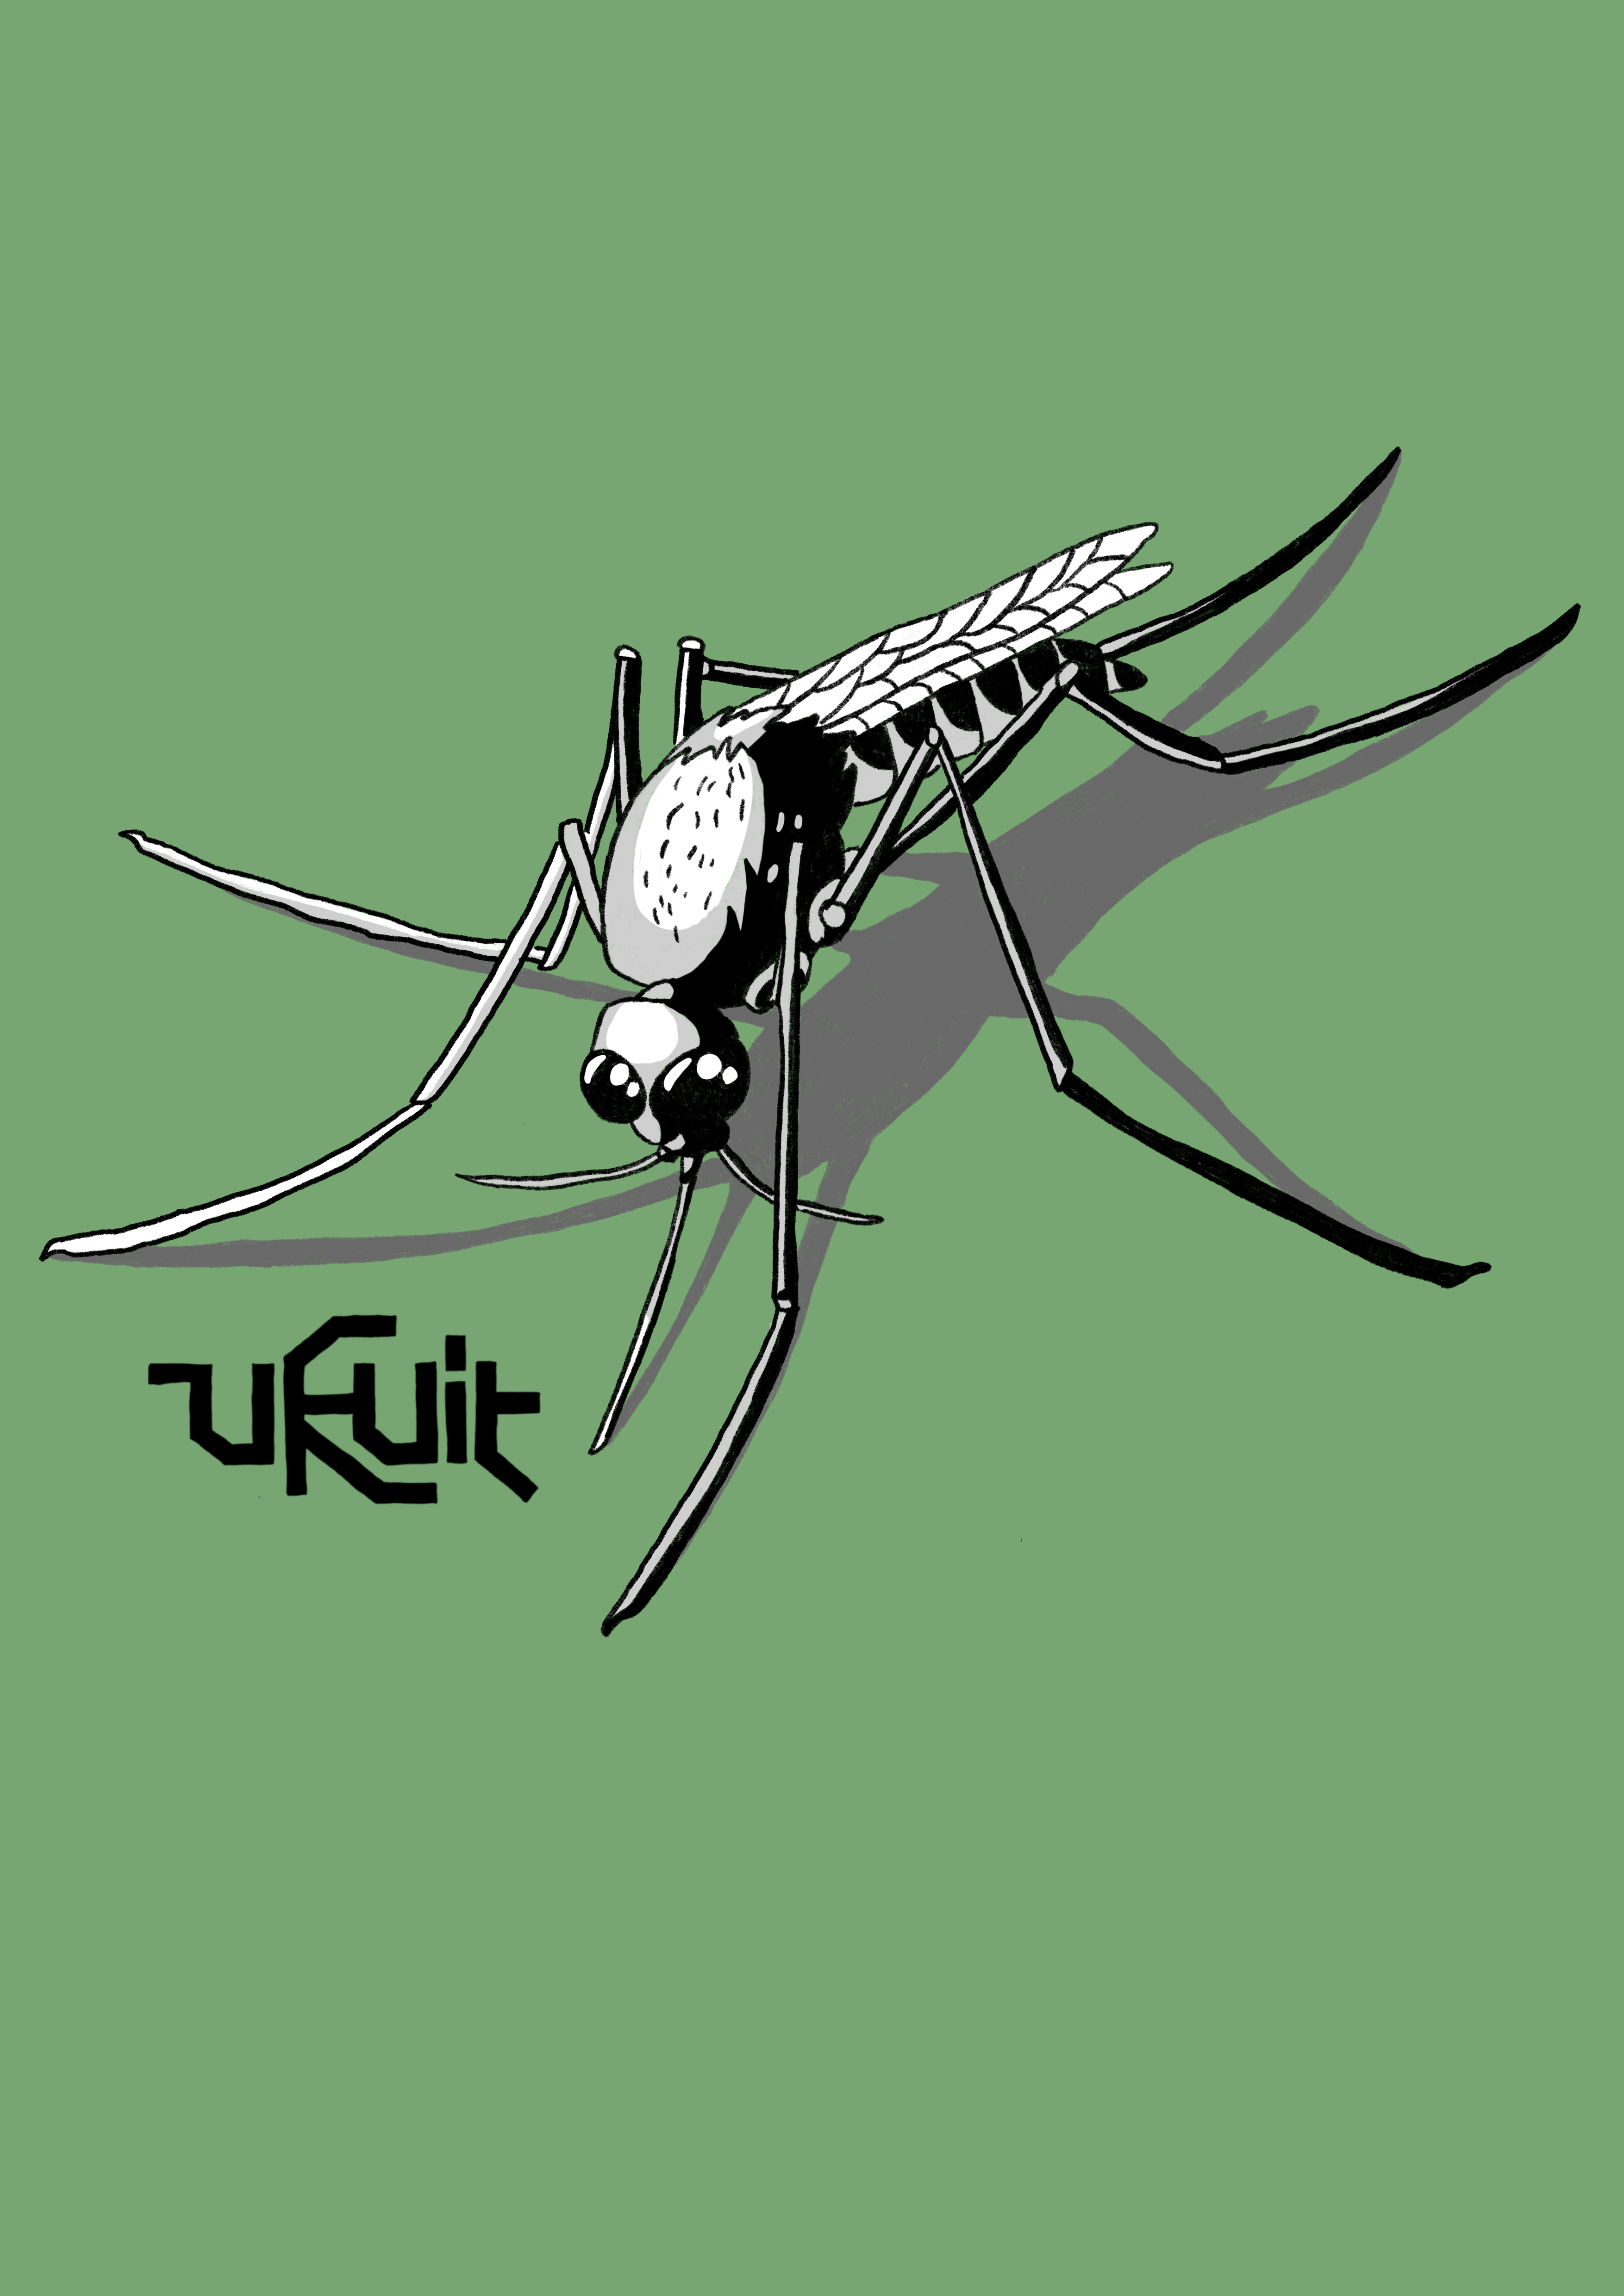 ukuit-mosquito-baselayer-print-01